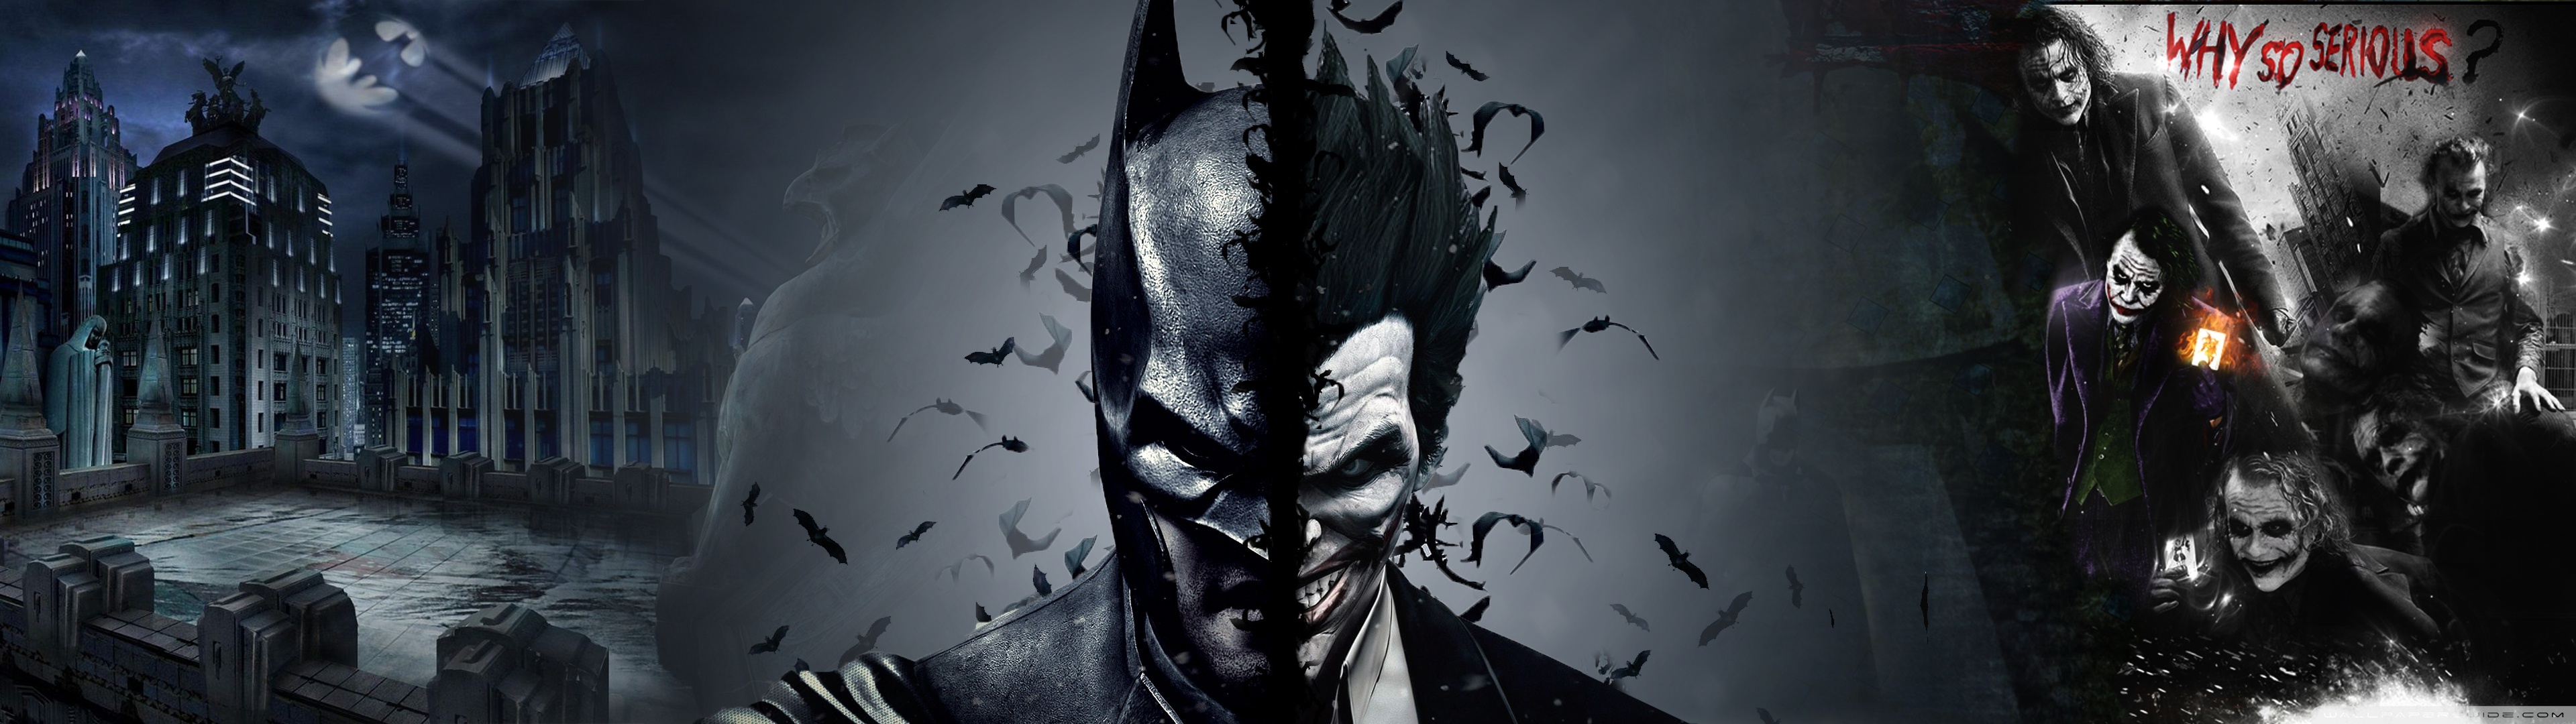 Free download Batman vs Joker 4K HD Desktop Wallpapers for 4K